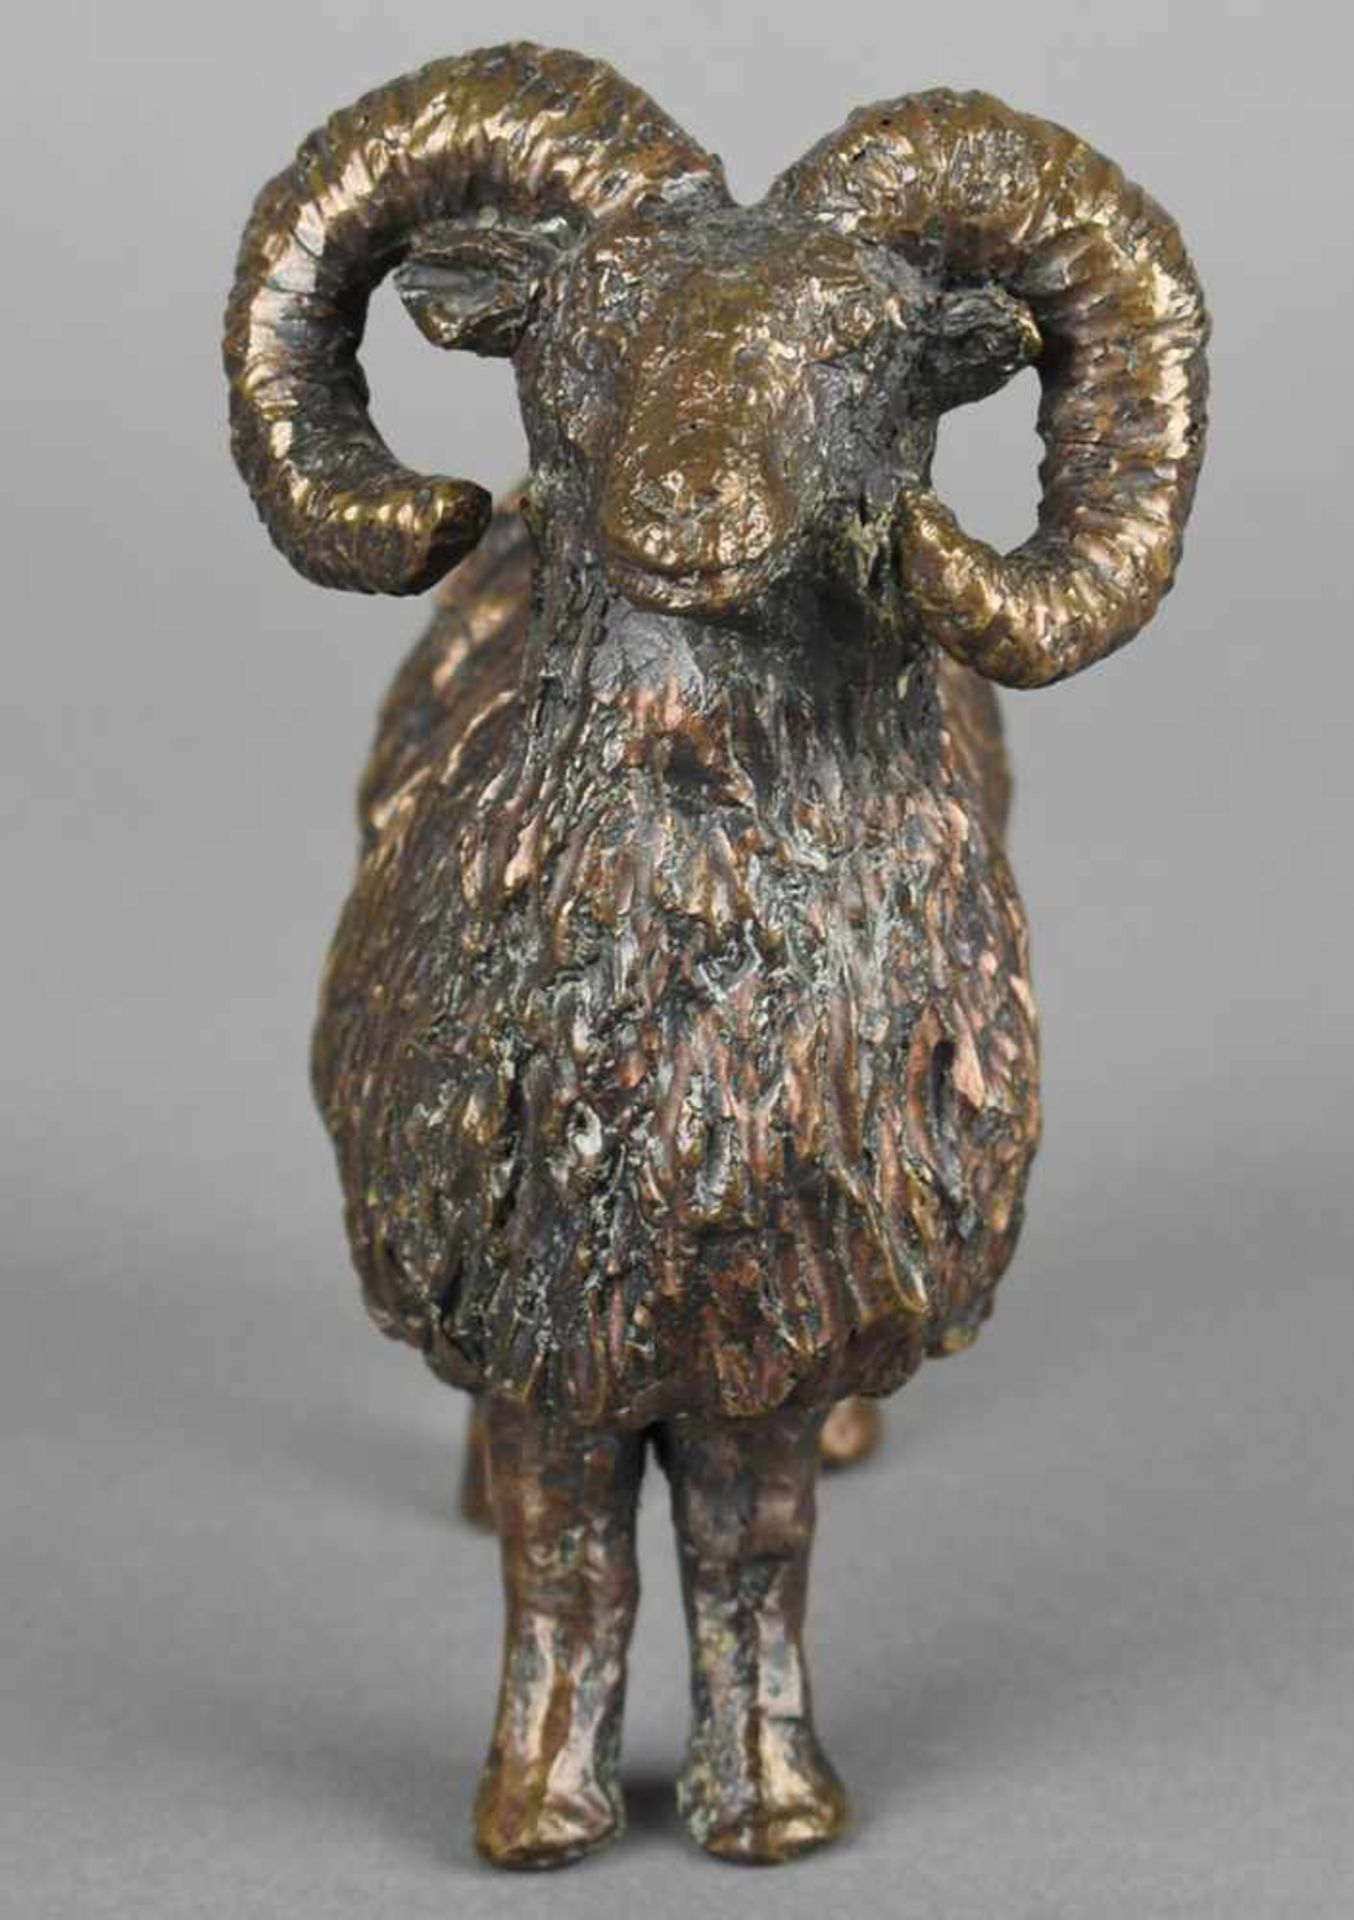 Widder Bronze dunkel patiniert, stehender Schafbock mit stattlichen gewundenen Hörnern, - Bild 4 aus 4